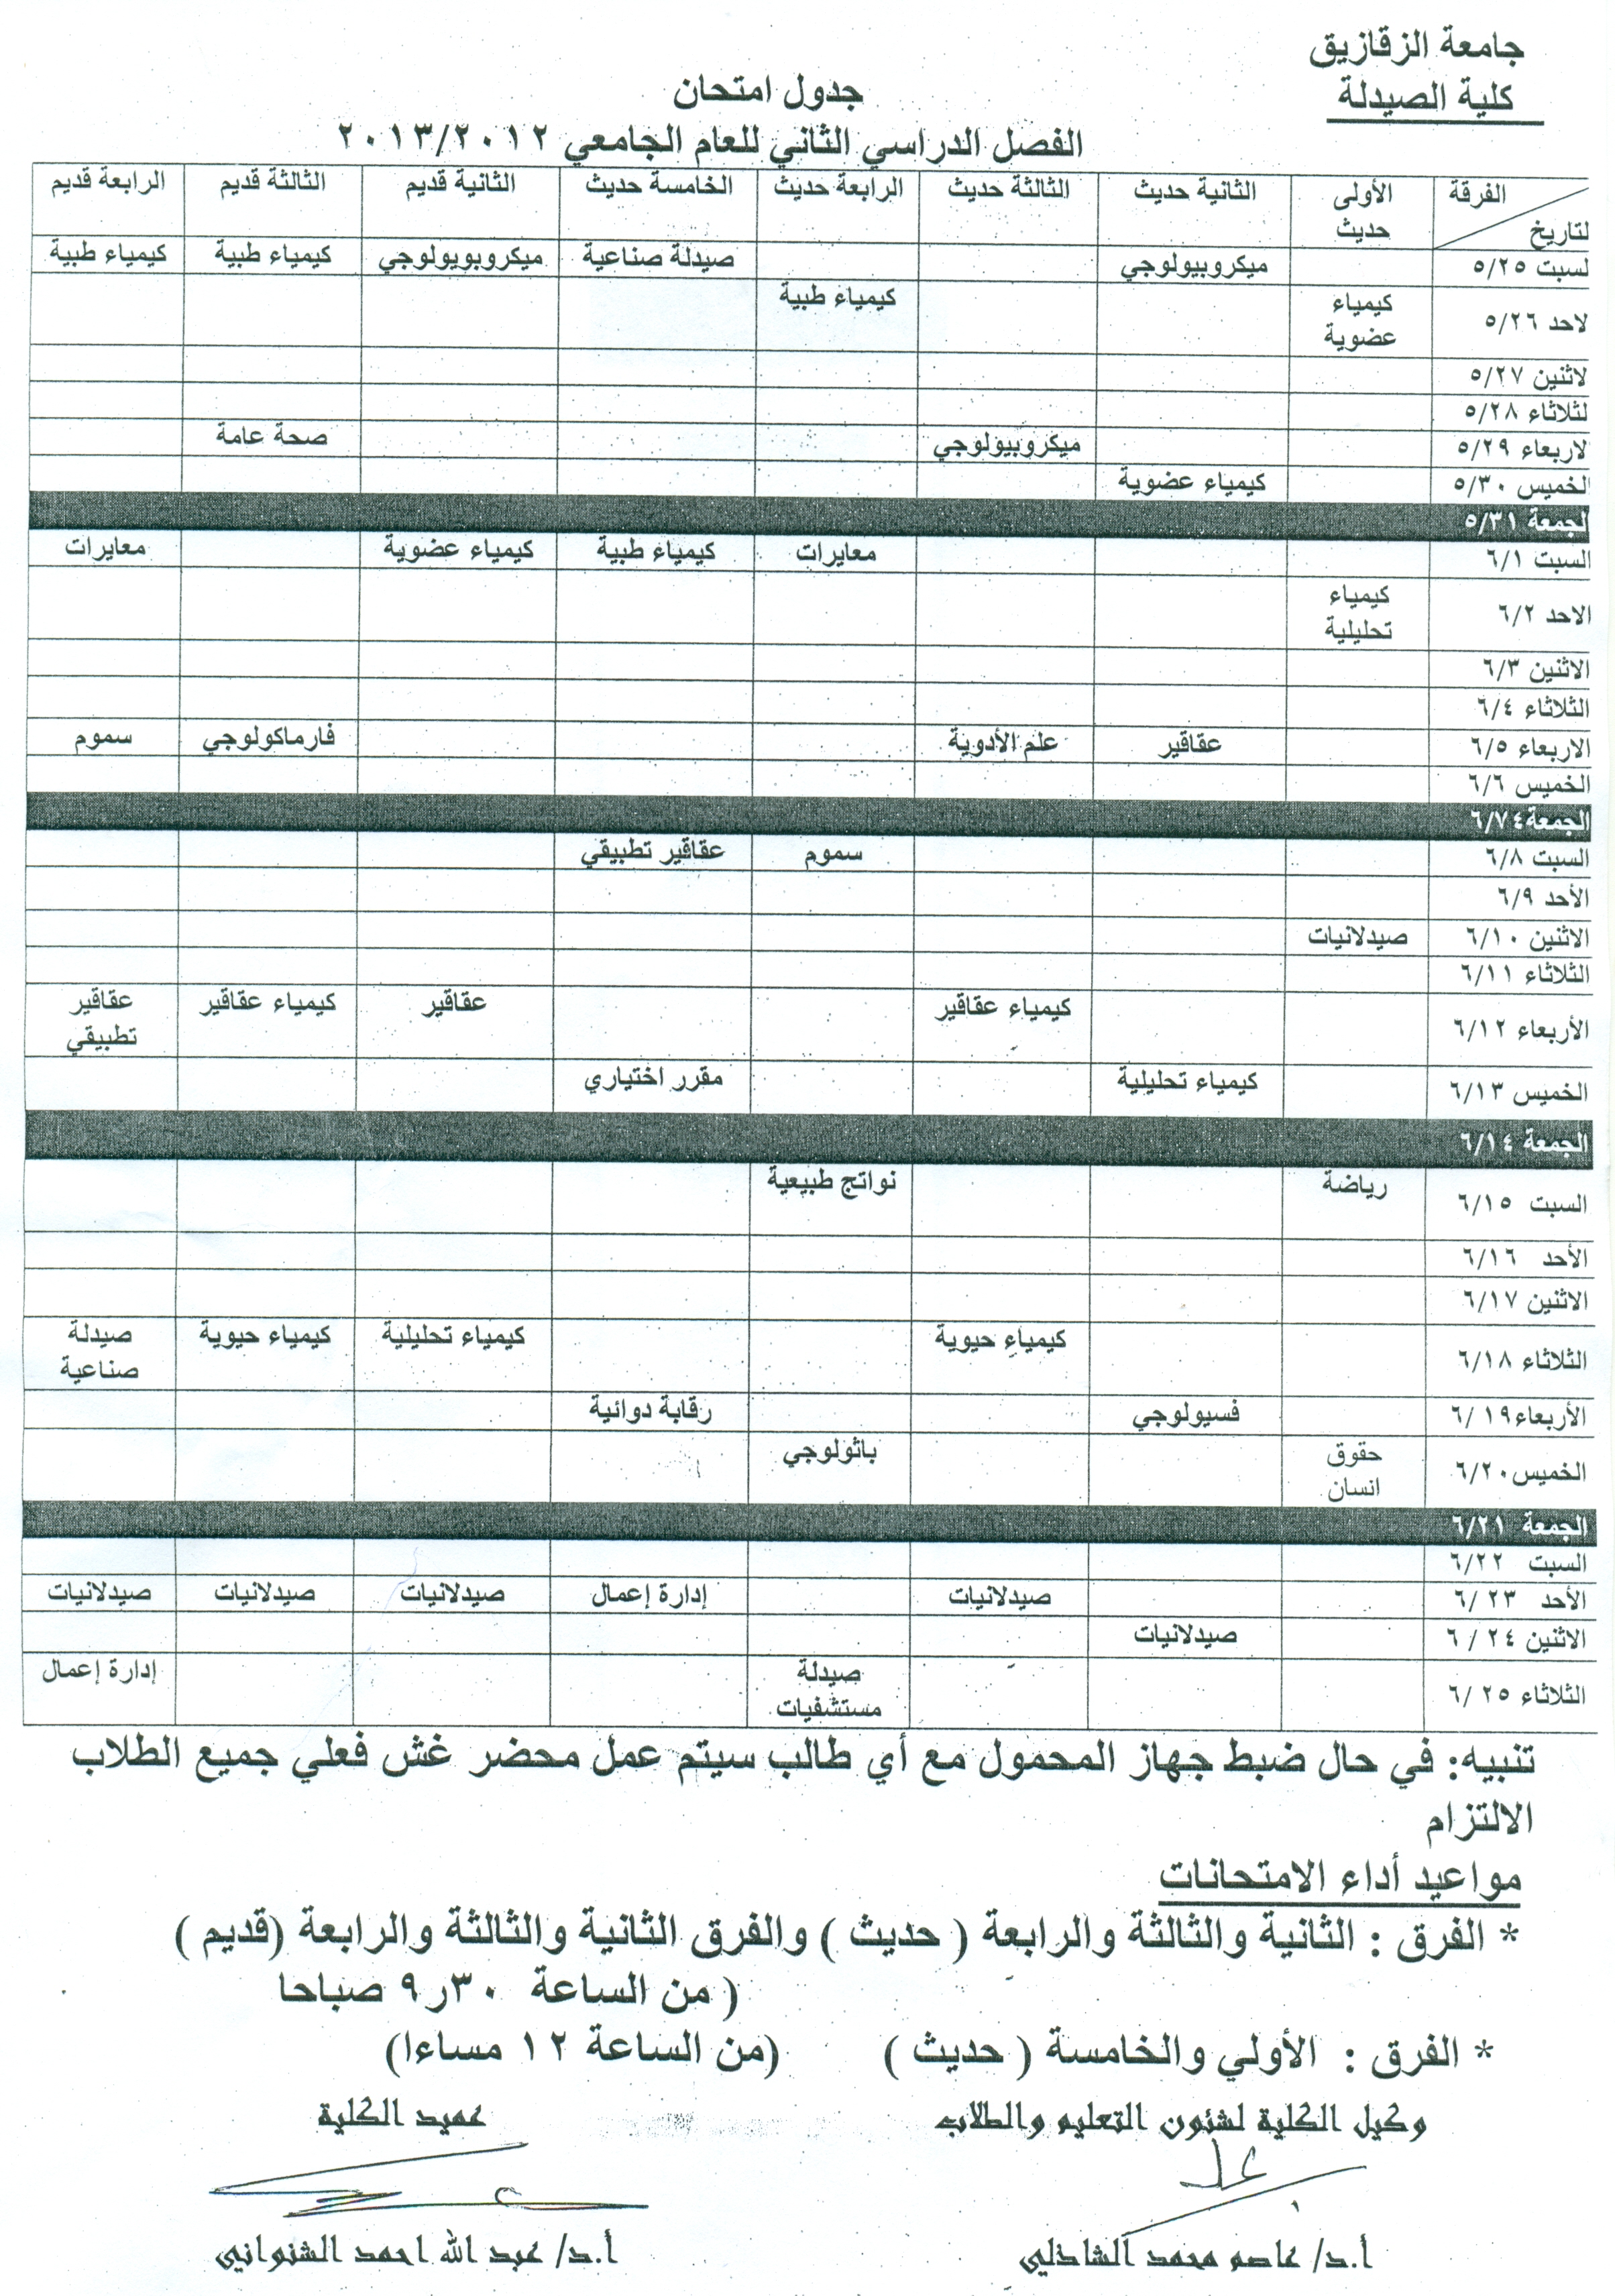 جدول إمتحانات جميع الفرق الفصل الدراسى الثانى 2012/2013